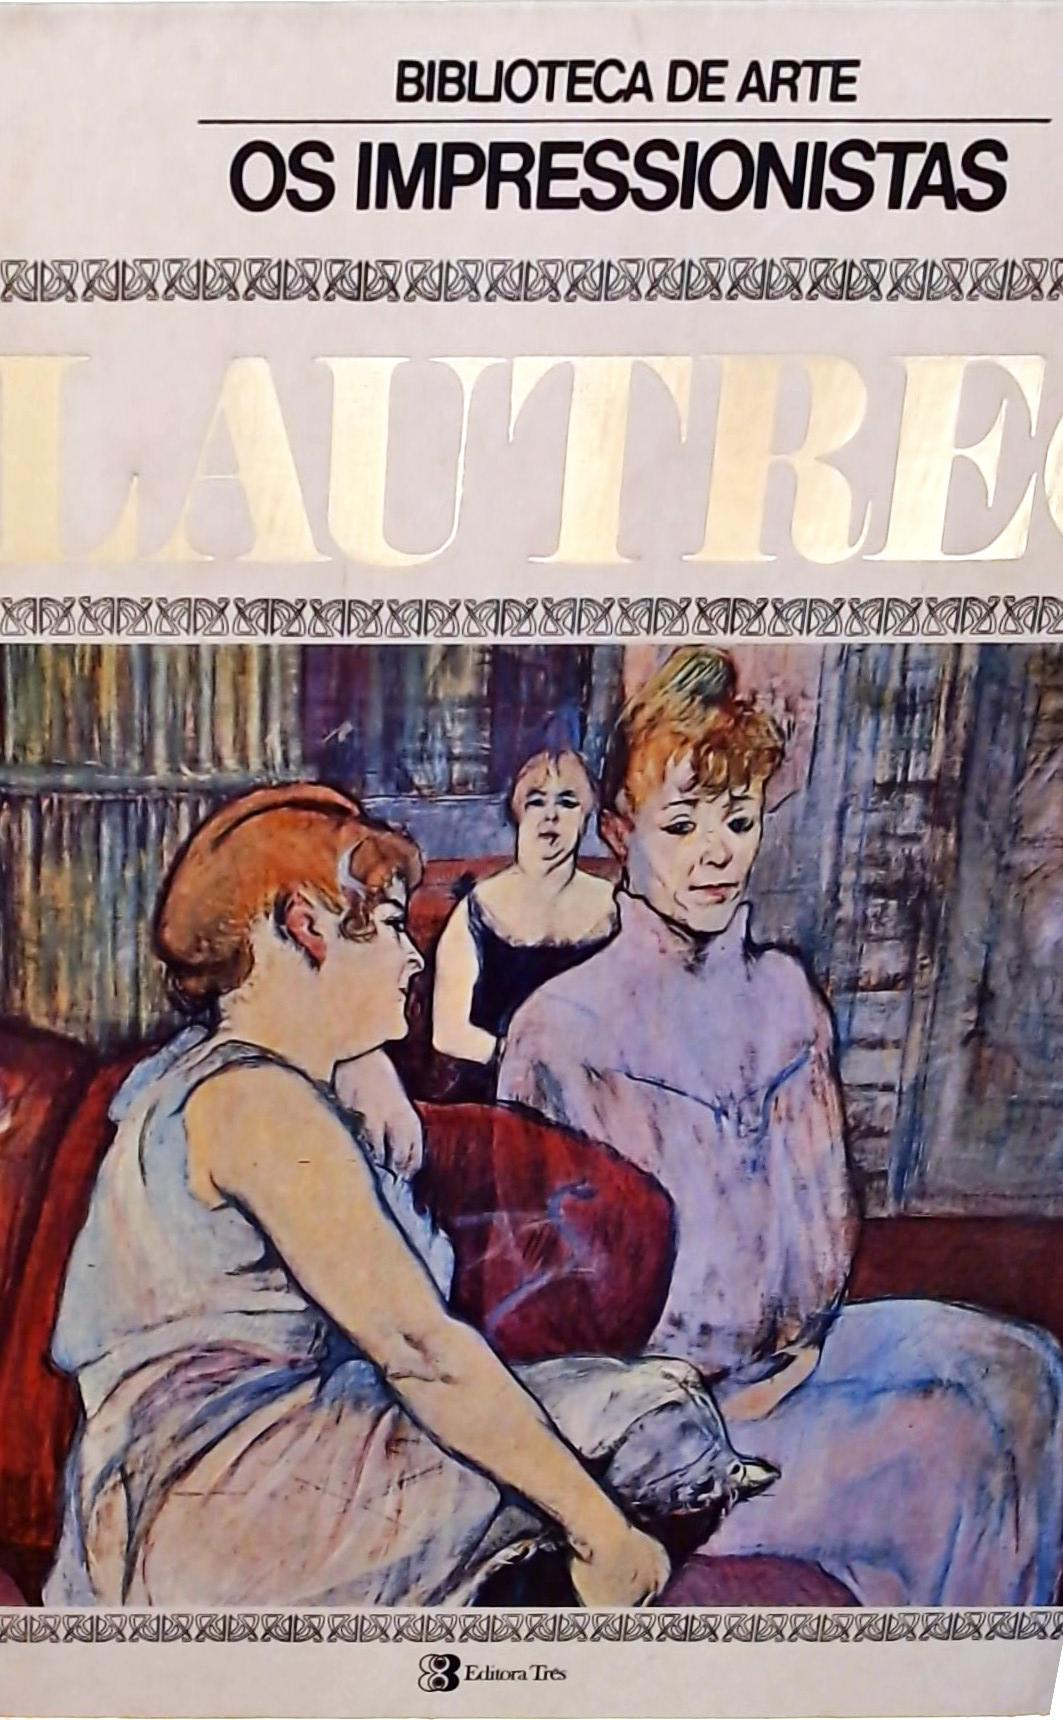 Os Impressionistas - Lautrec